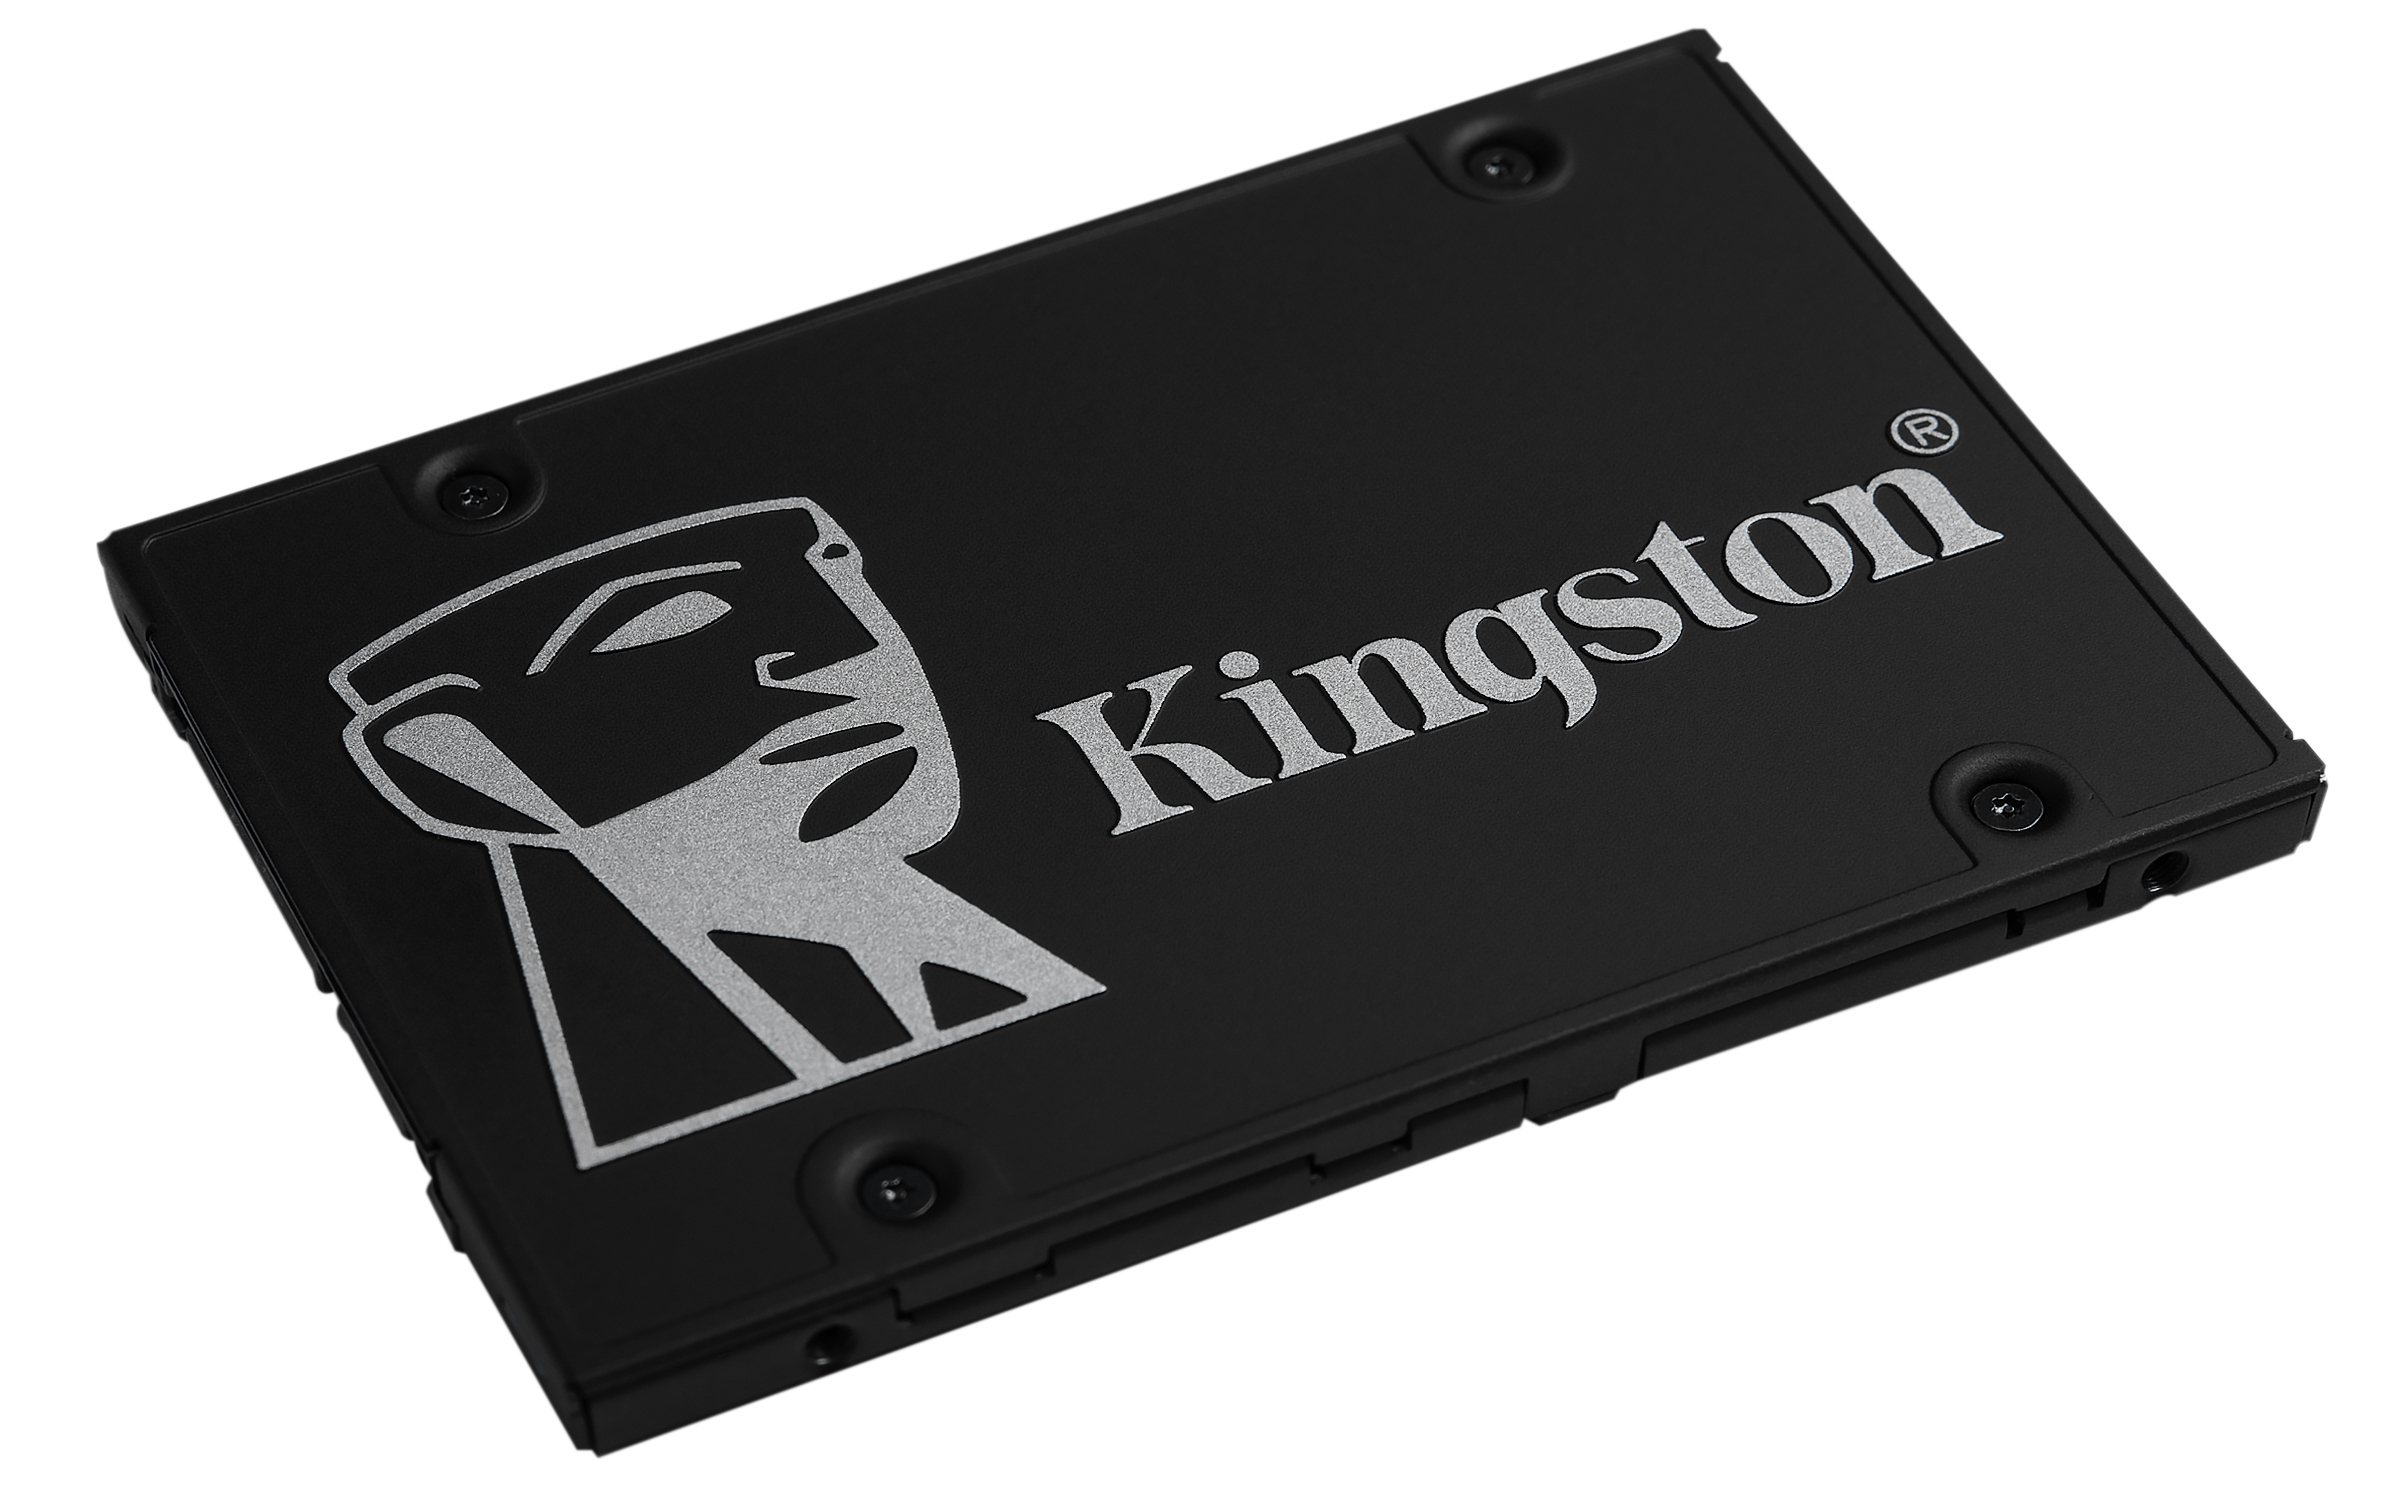 Kingston KC600 - 512 GB - 2.5&quot; - 550 MB/s - 6 Gbit/s